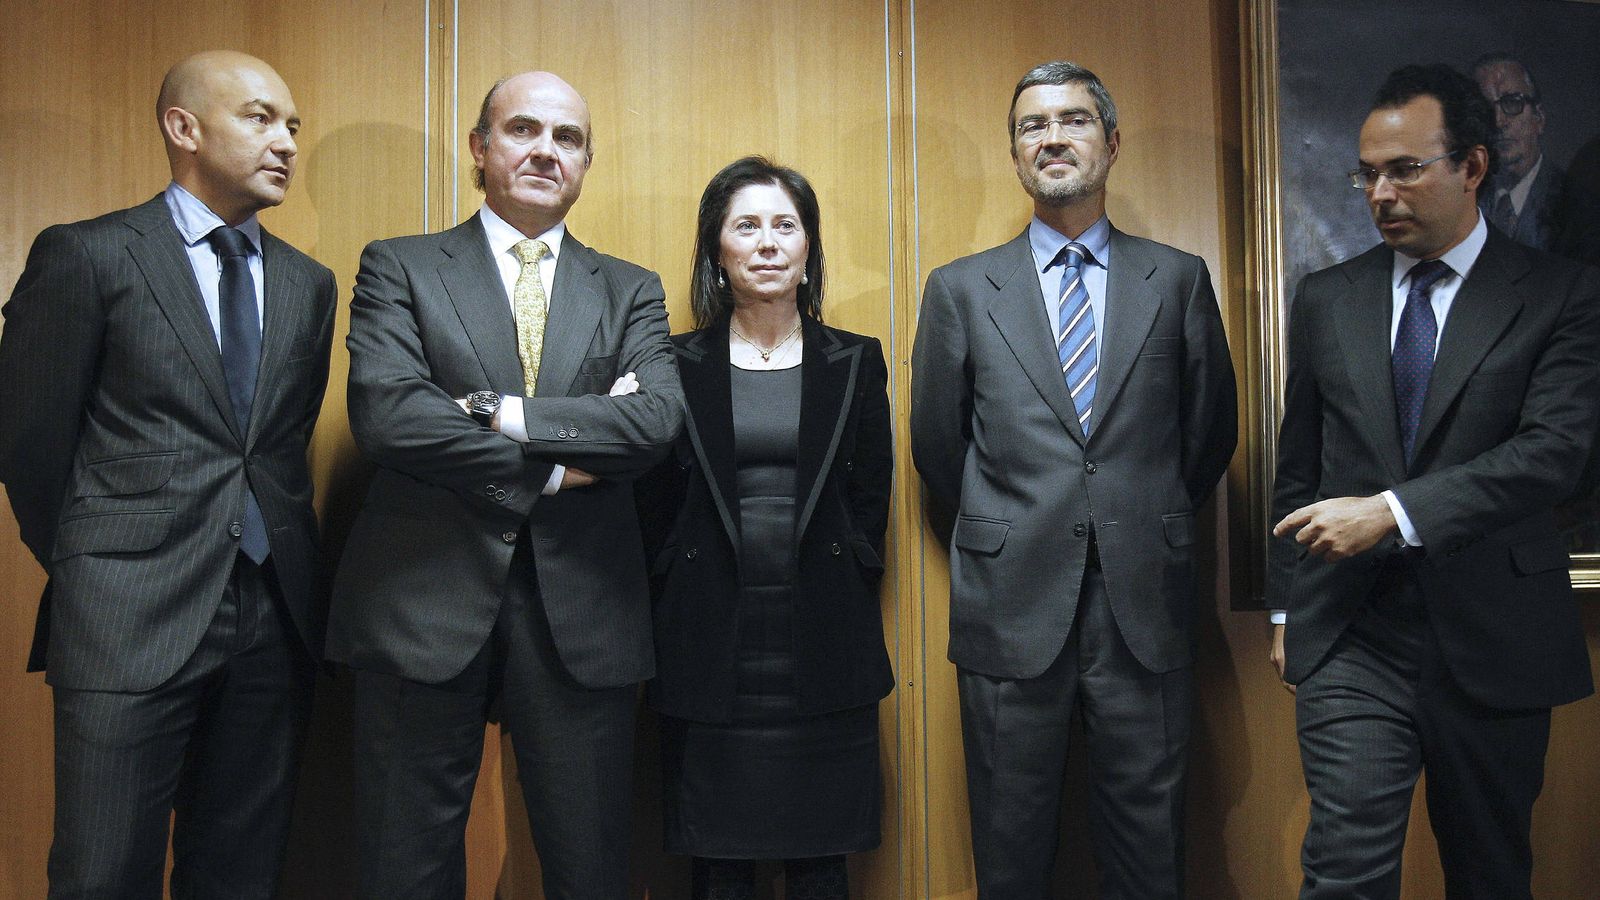 Foto: El ministro de Economía y Competitividad, Luis de Guindos (2i), junto con Rosa María Sánchez-Yebra y el hasta ahora subsecretario de Economía y Competitividad, Miguel Temboury (d). (EFE)